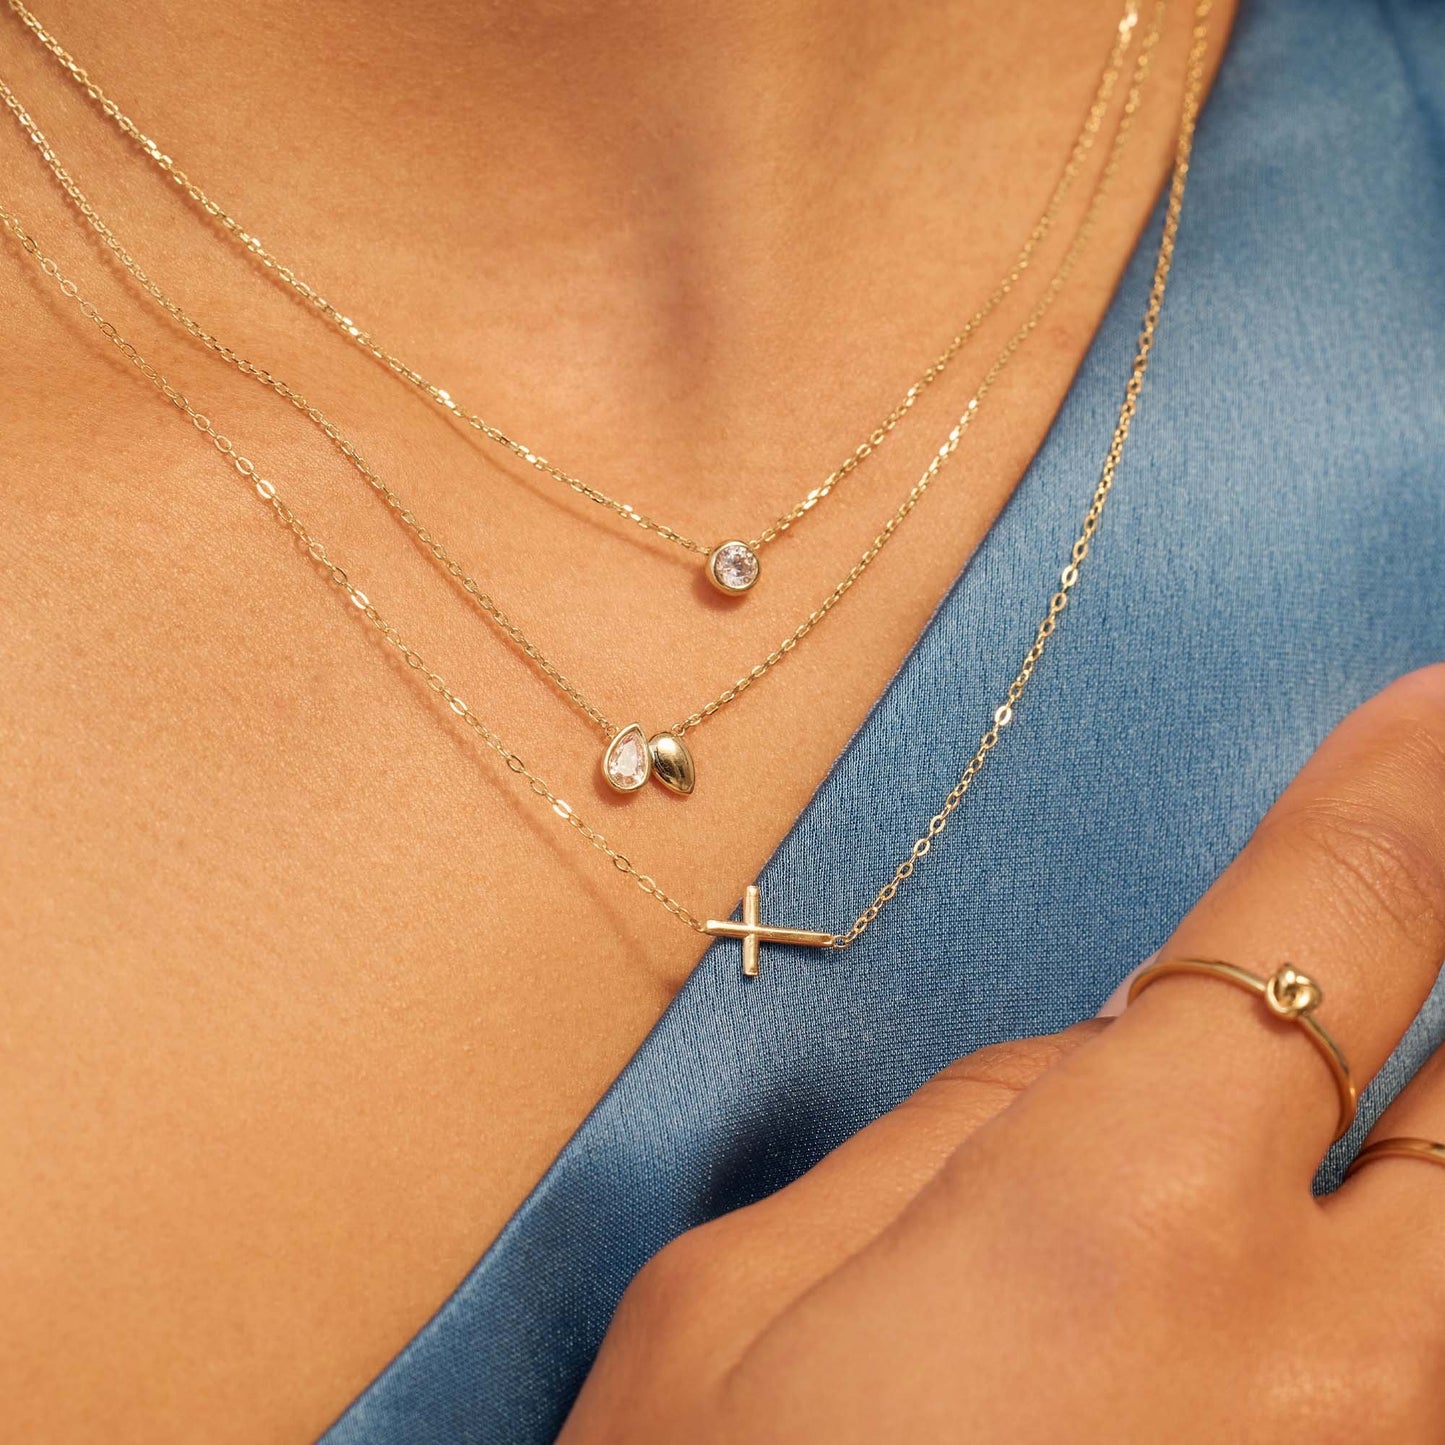 Della Spiga Donatella collier en or 9 carats avec croix